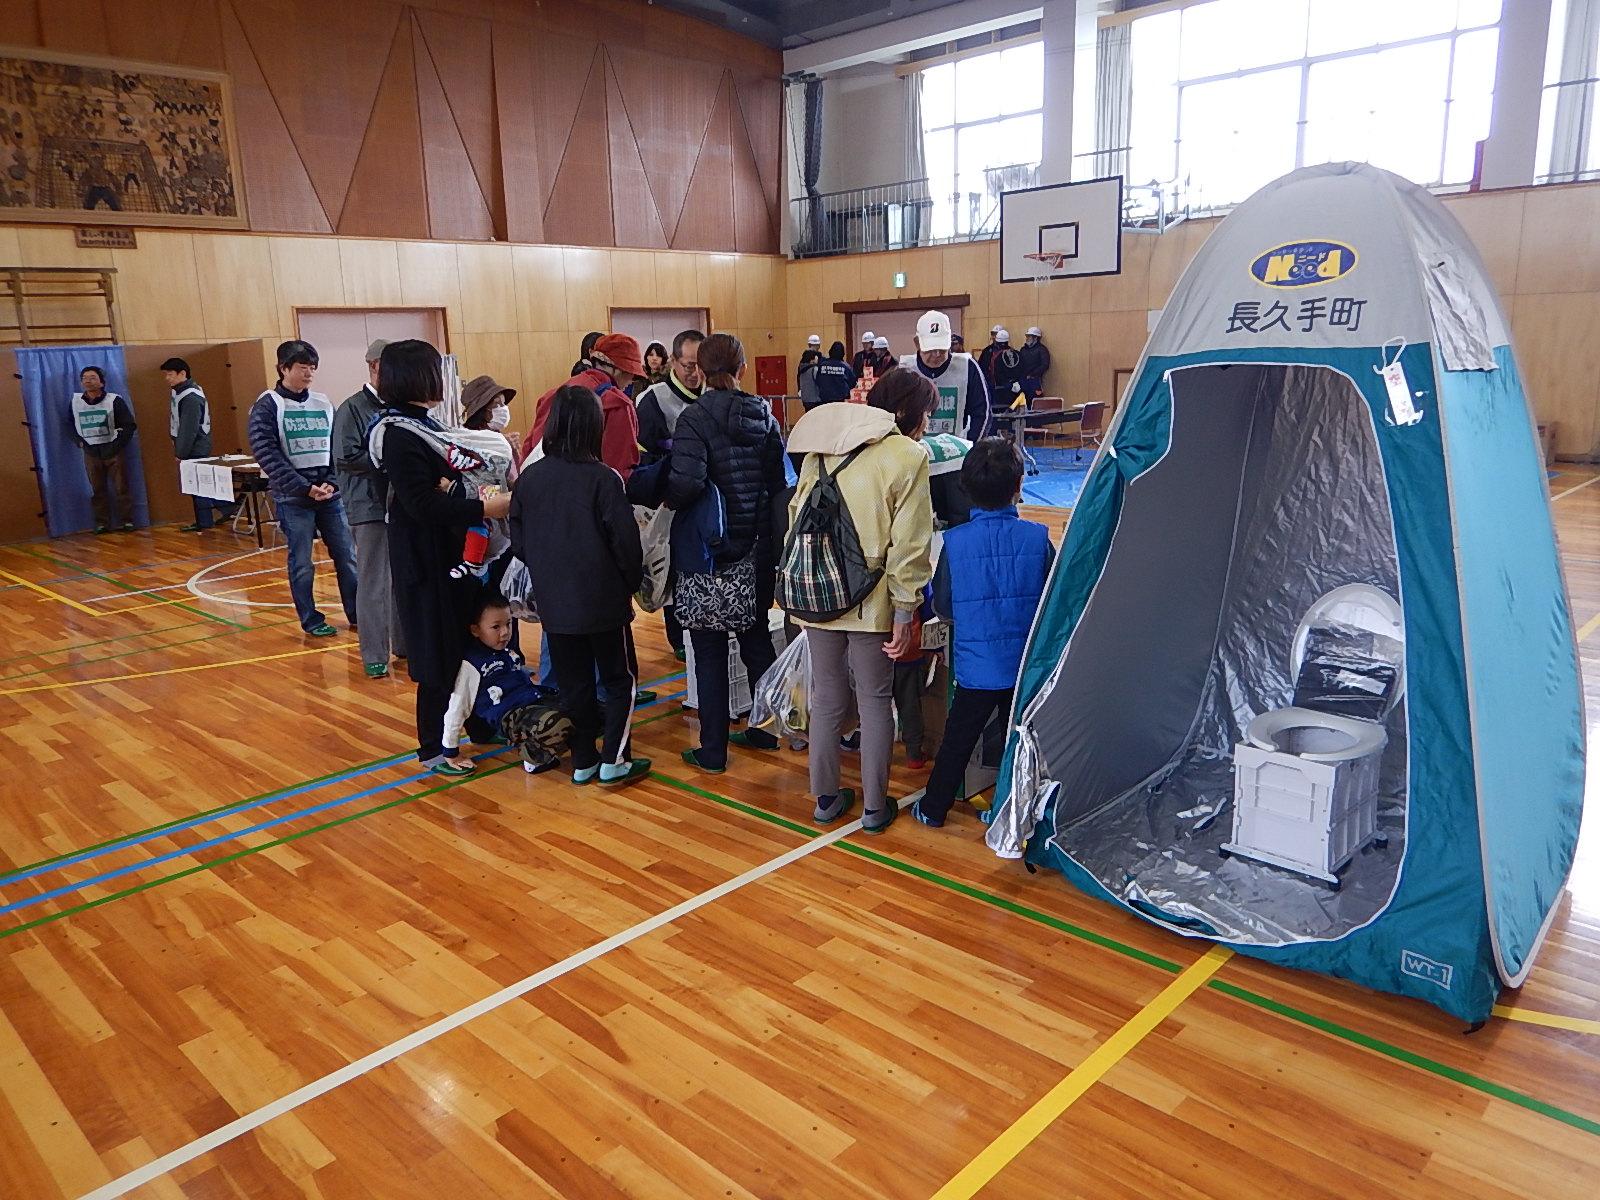 体育館内でリュックを背負った避難訓練の参加者が集まっている横にドーム型テントに設置された簡易トイレが展示されている写真